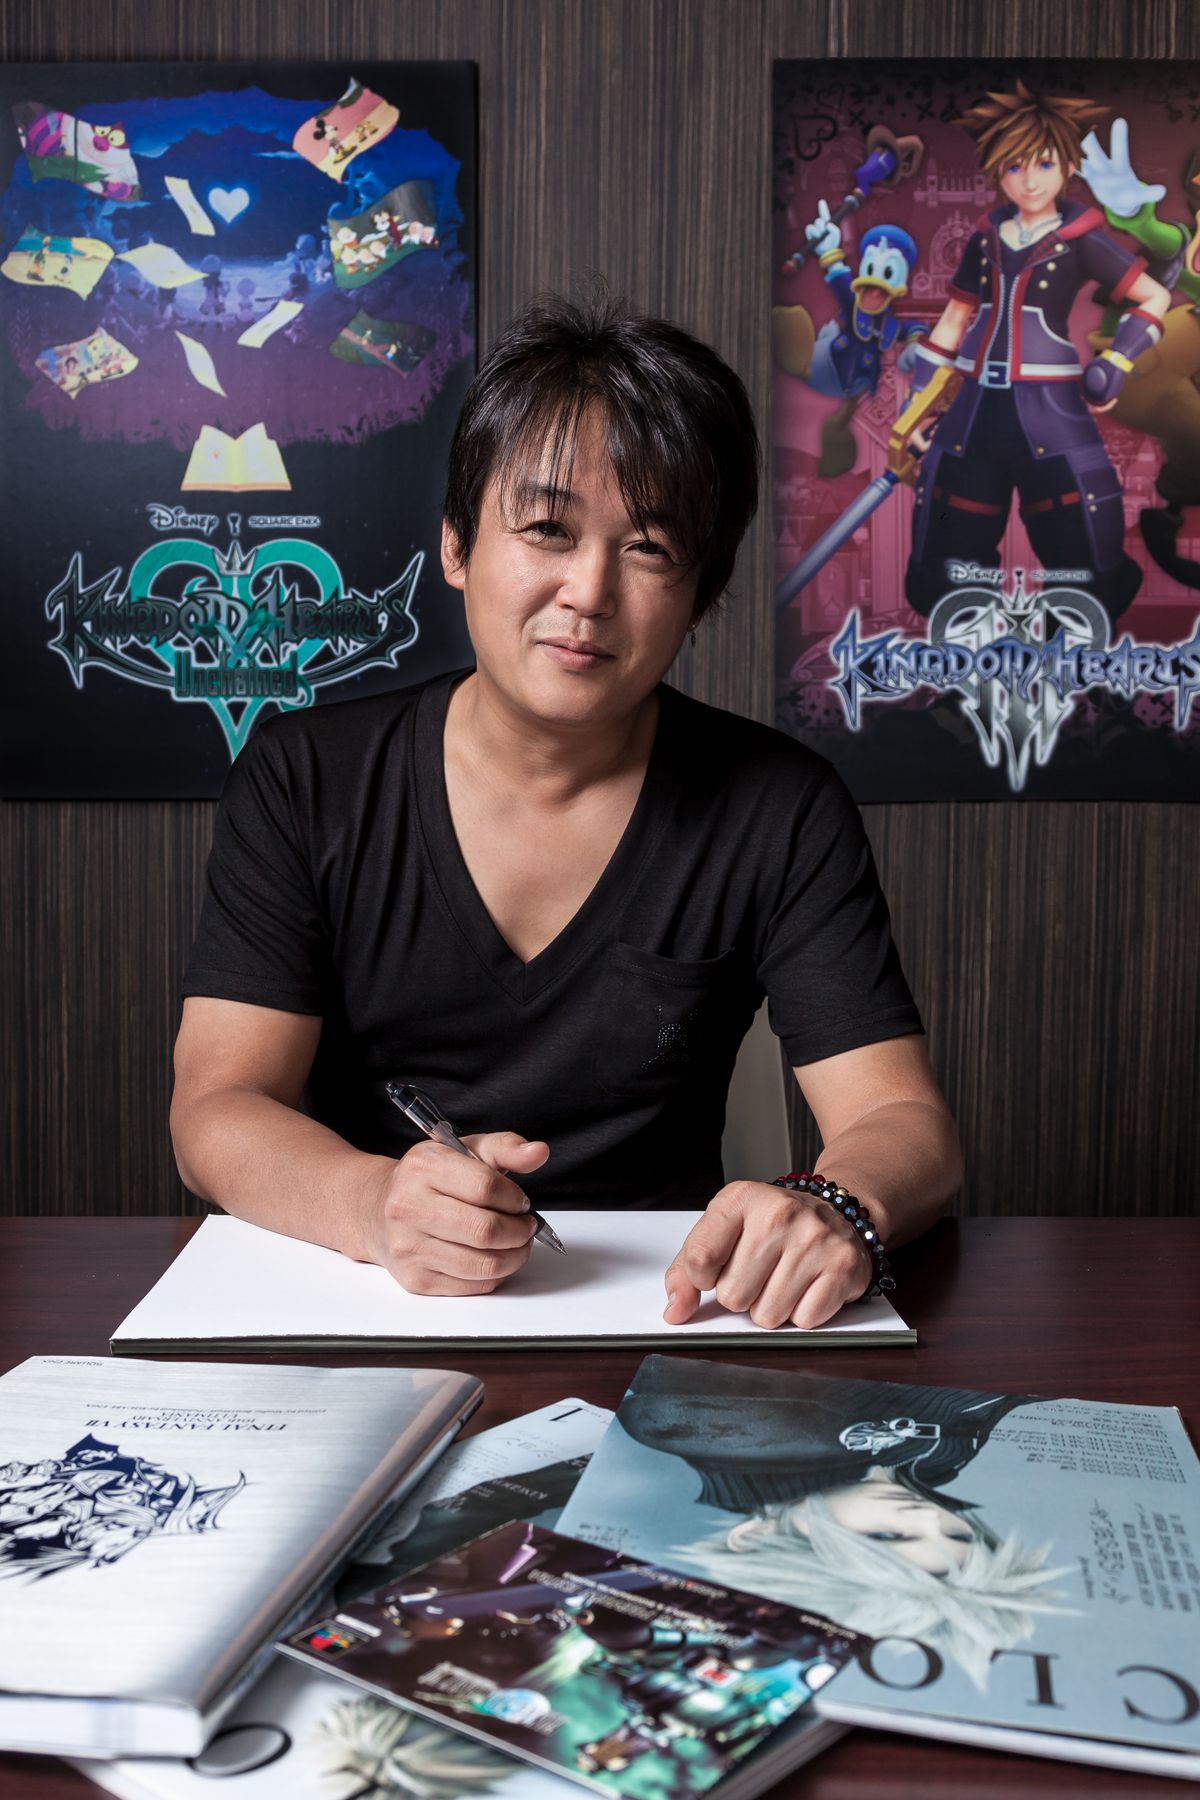 Final Fantasy 7 - Художник Тэцуя Номура – продвижение по служебной лестнице